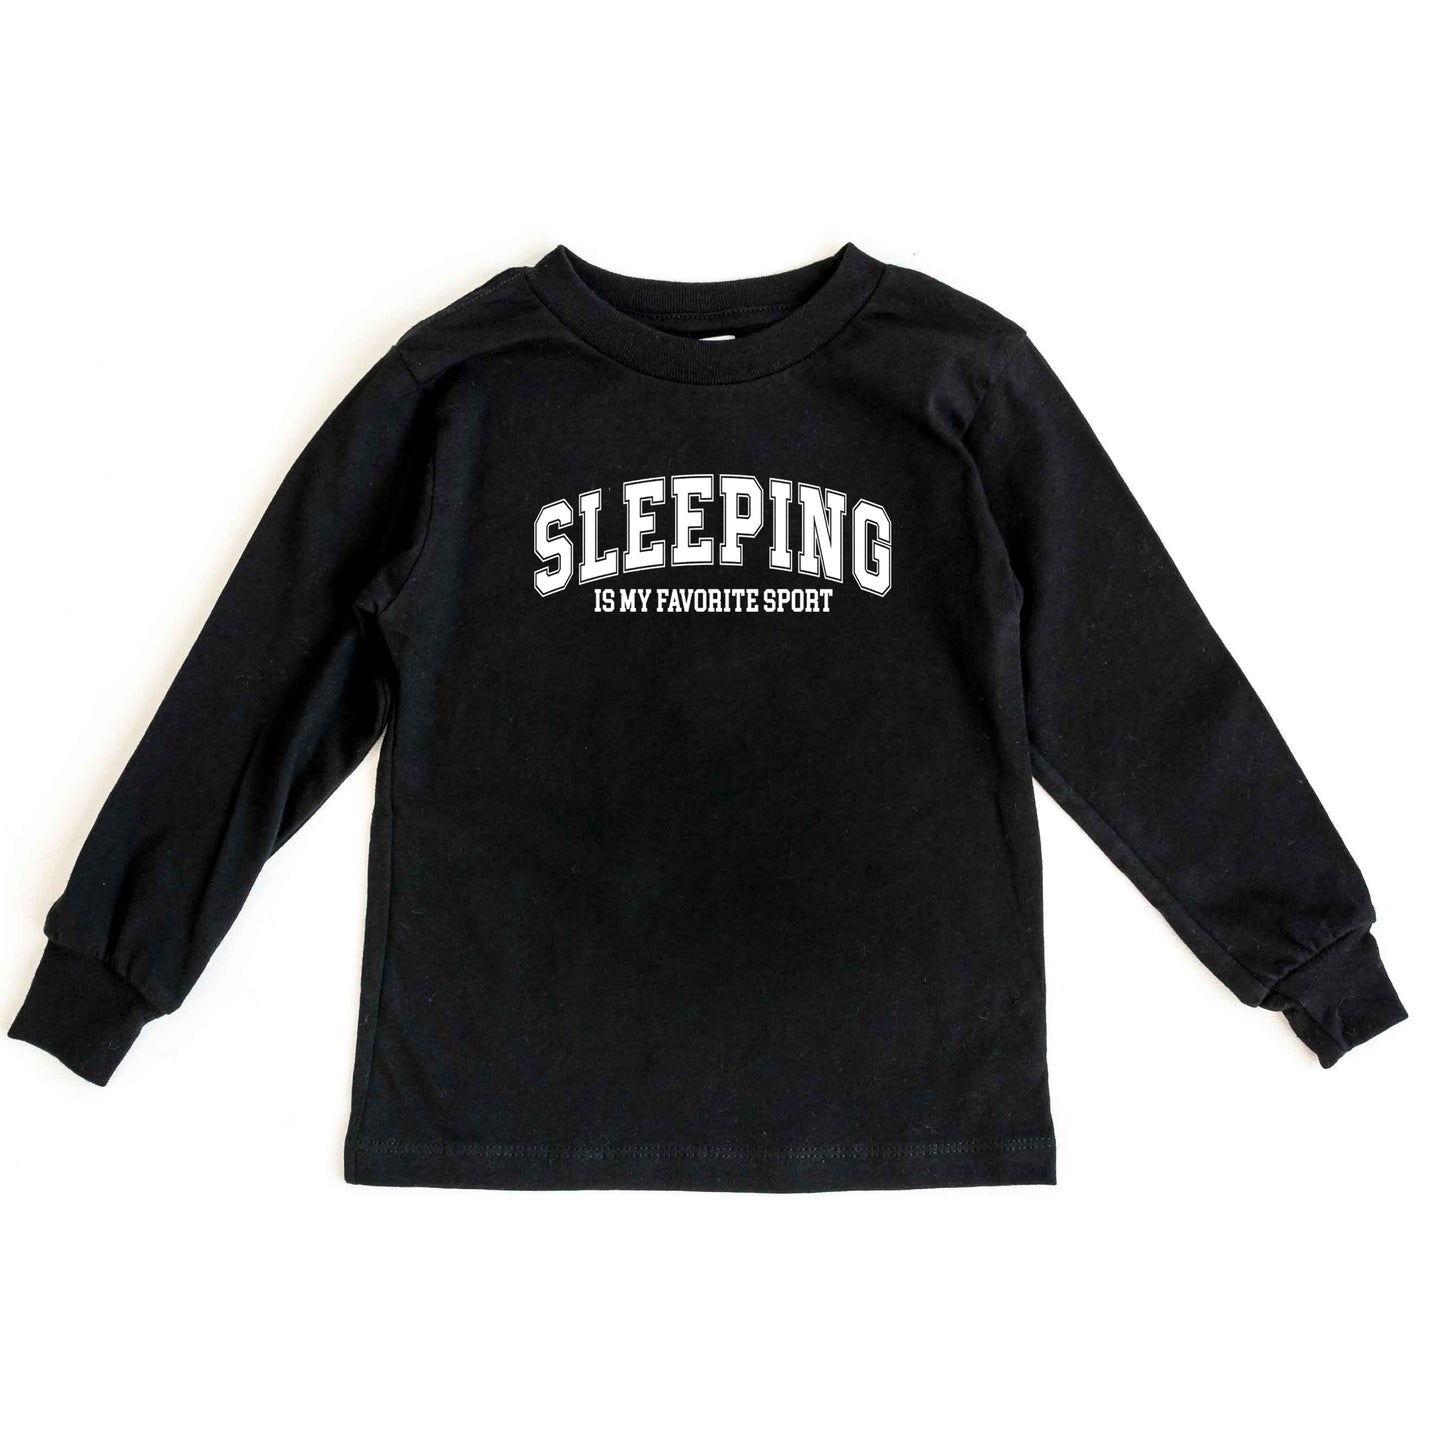 Sleeping is My Favorite Sport | Youth Long Sleeve Tee